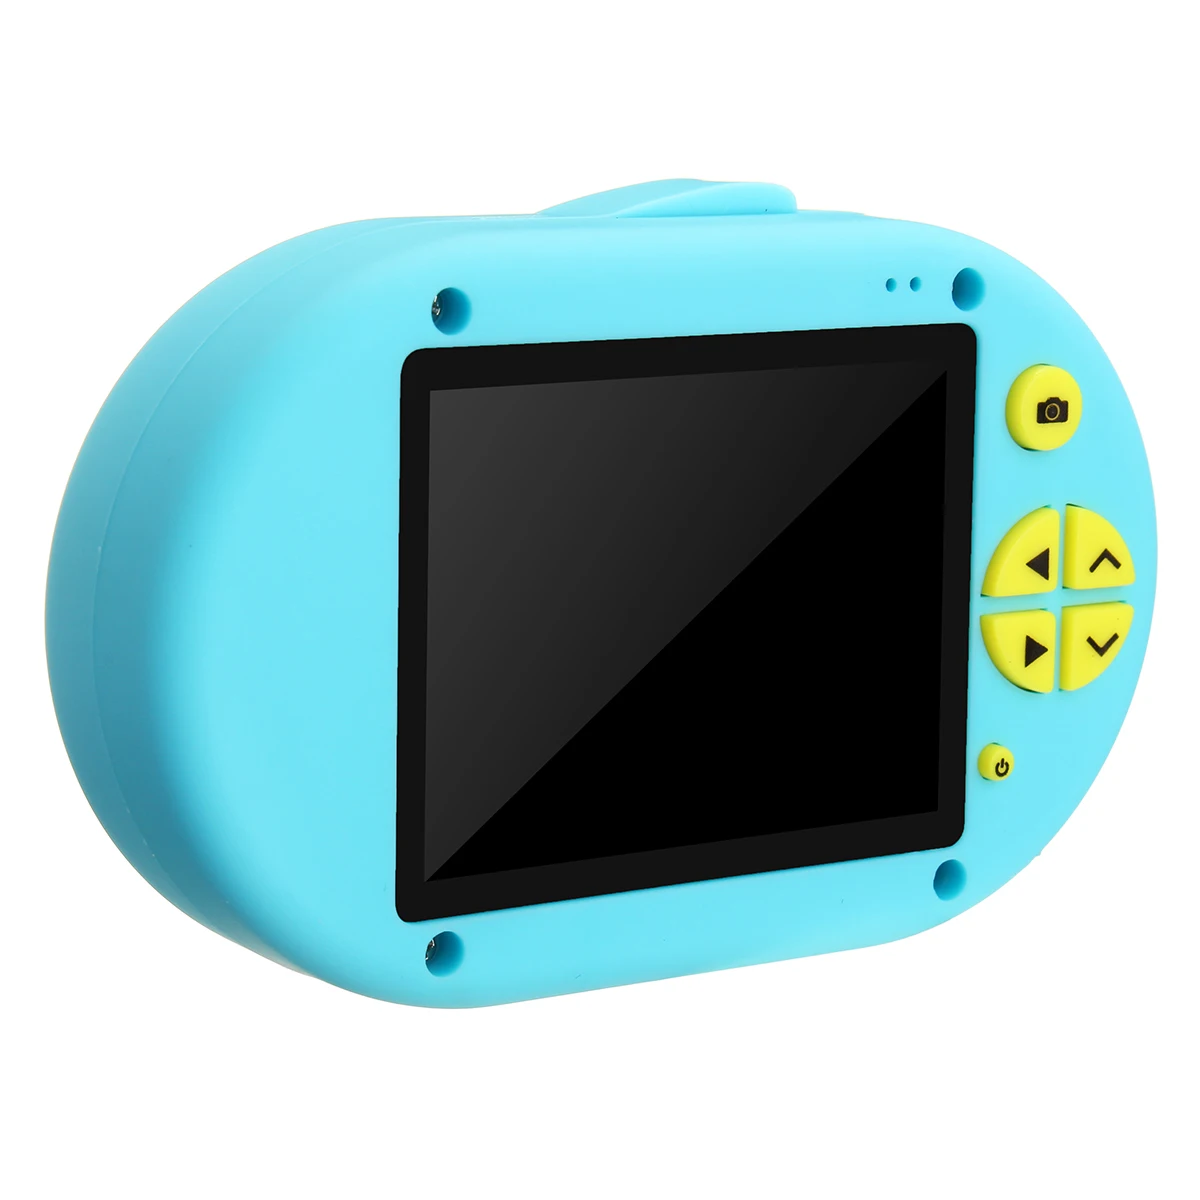 2 дюйма 1080P Мини цифровой Камера с изображением мультипликационных персонажей для детей фото Камера Wi-Fi USB фон для фотосъемки на день рождения подарок для ребенка детские игрушки для малышей - Цвет: Синий